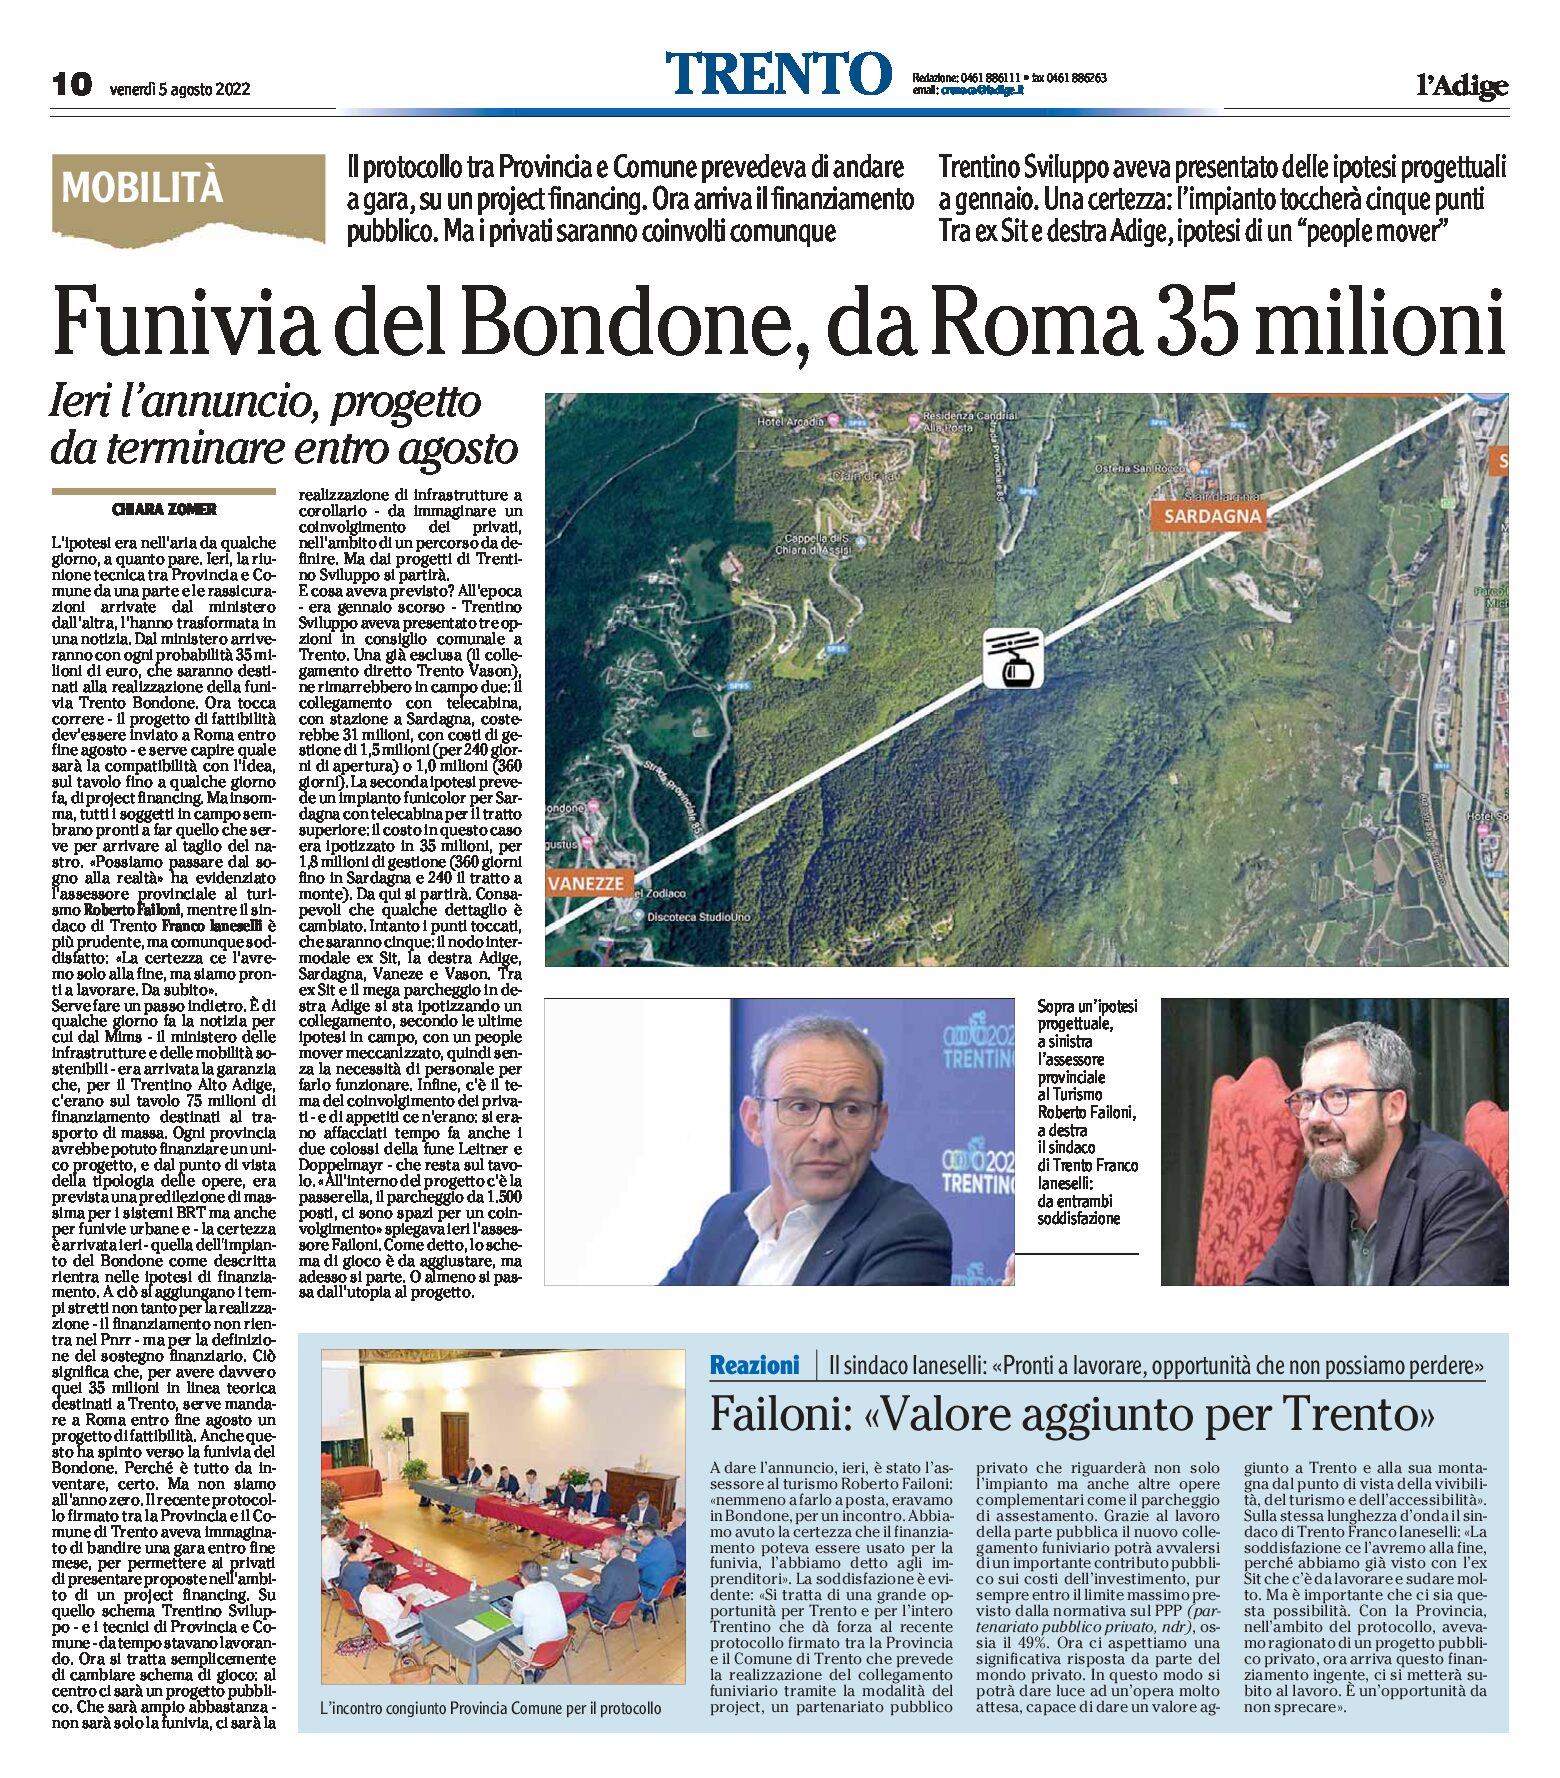 Funivia Trento-Bondone: da Roma 35 milioni